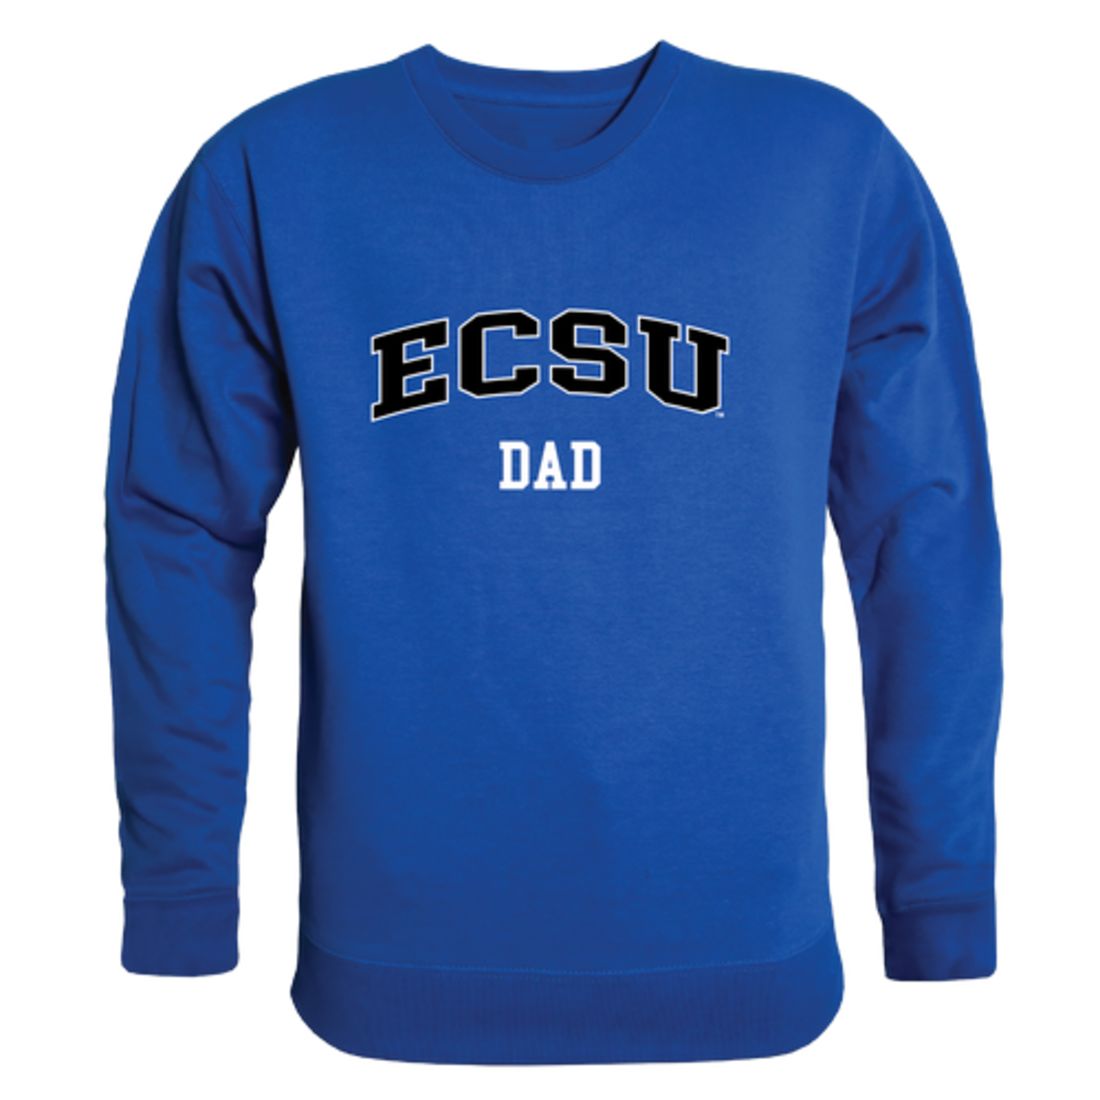 ECSU Elizabeth City State University Vikings Dad Fleece Crewneck Pullover Sweatshirt Heather Grey-Campus-Wardrobe